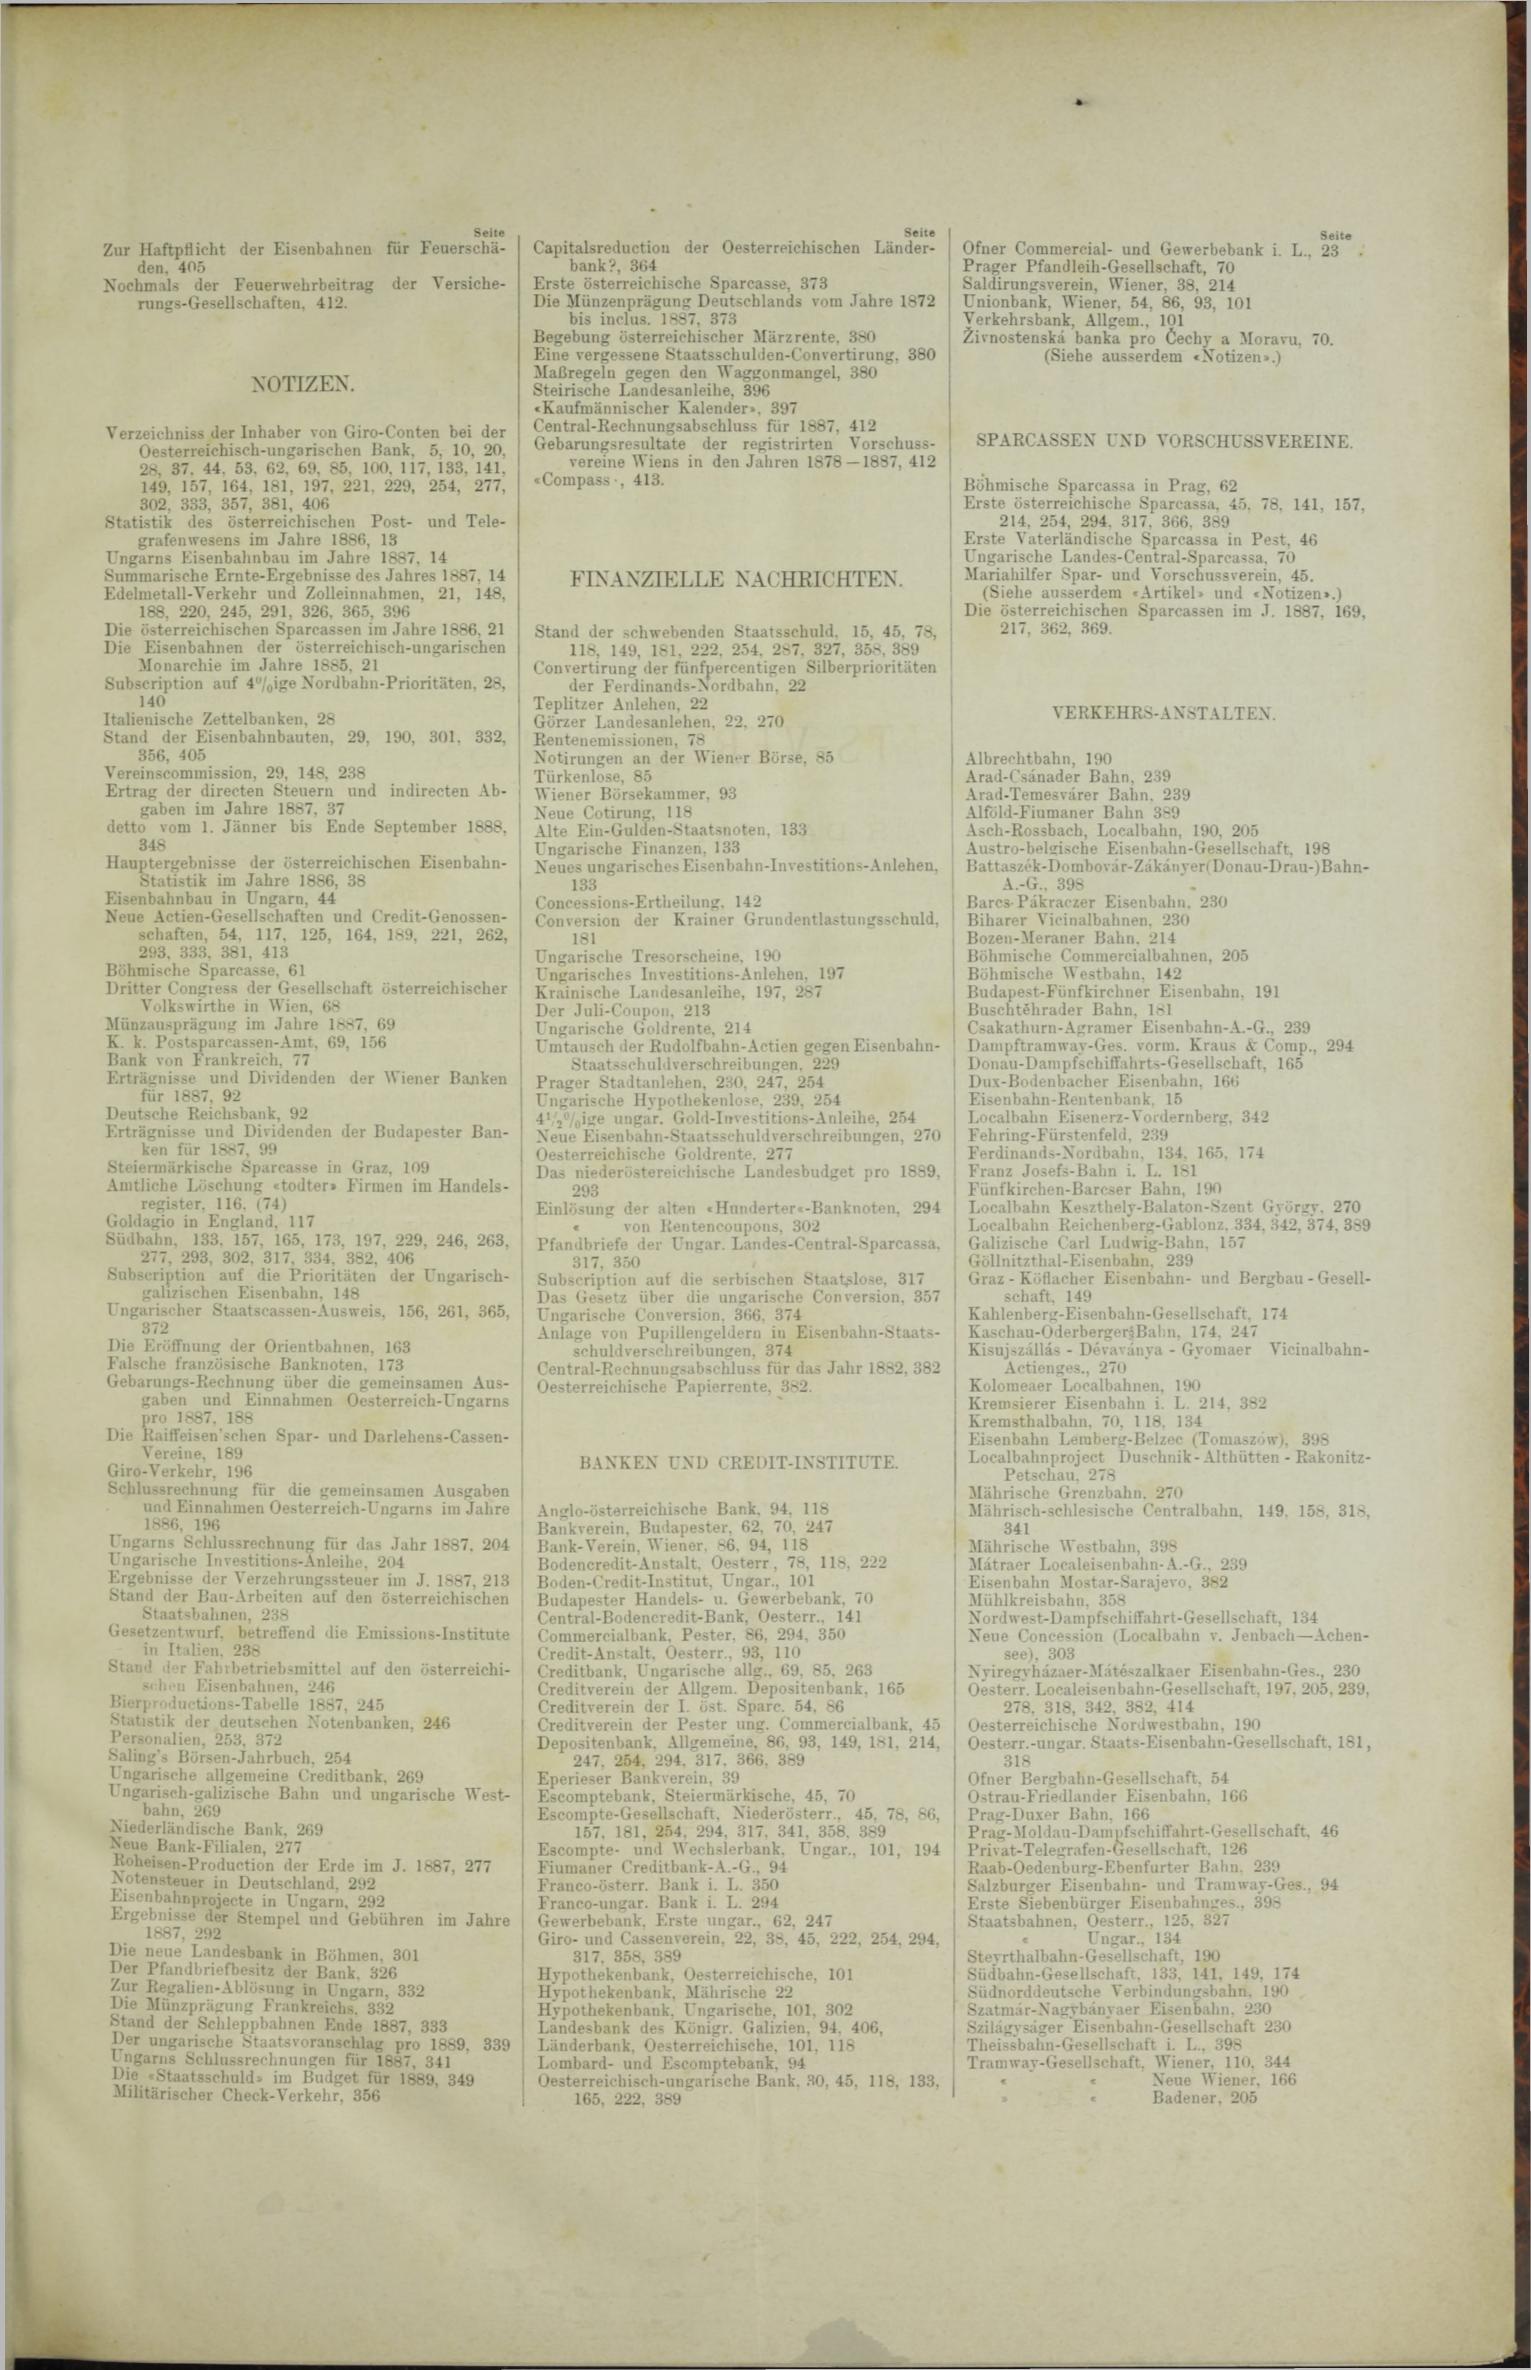 Der Tresor 05.04.1888 - Seite 11